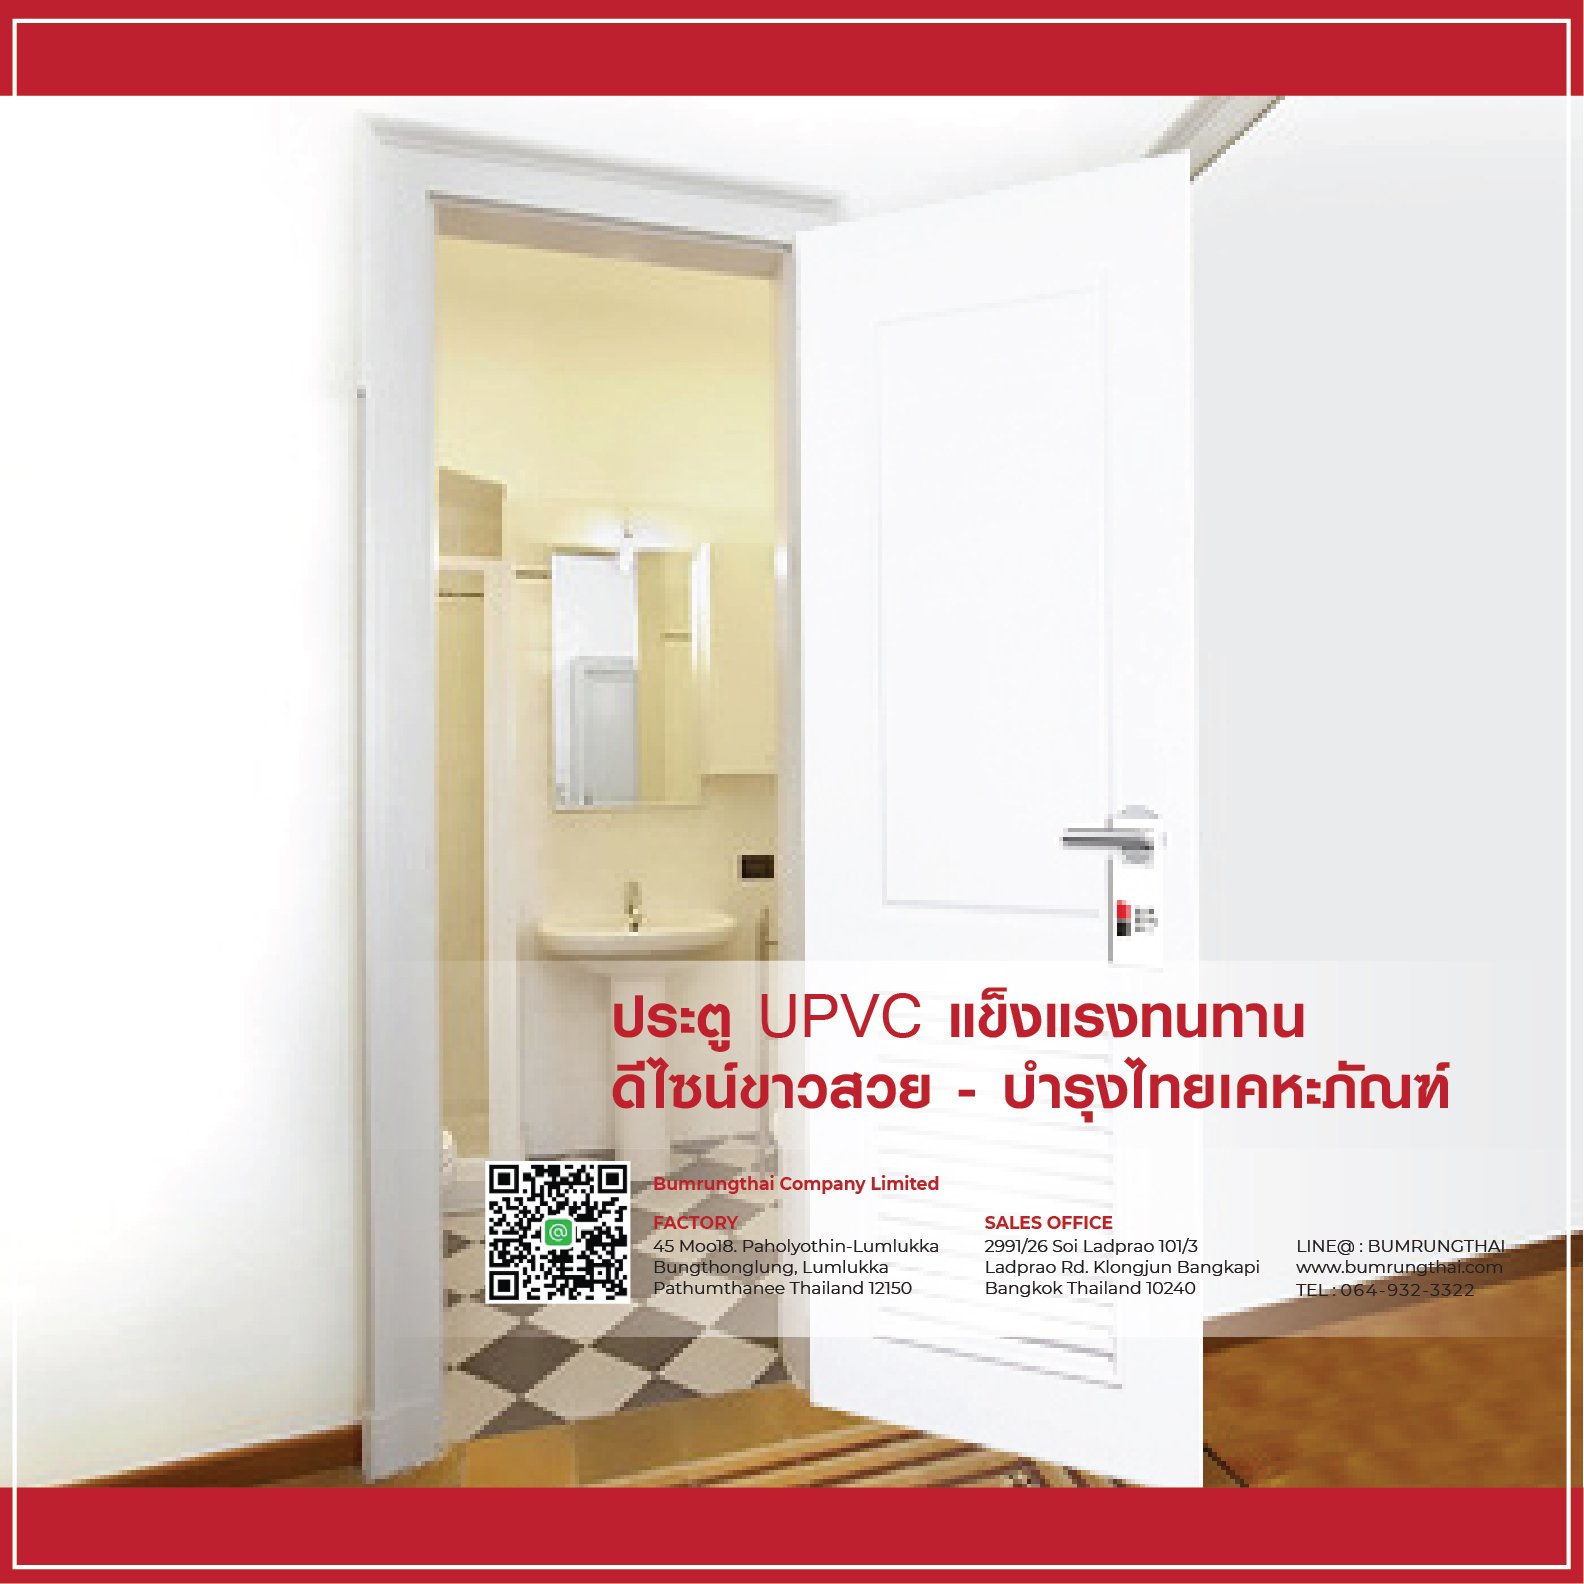 ประตู UPVC แข็งแรงทนทาน ดีไซน์ขาวสวย - บำรุงไทยเคหะภัณฑ์